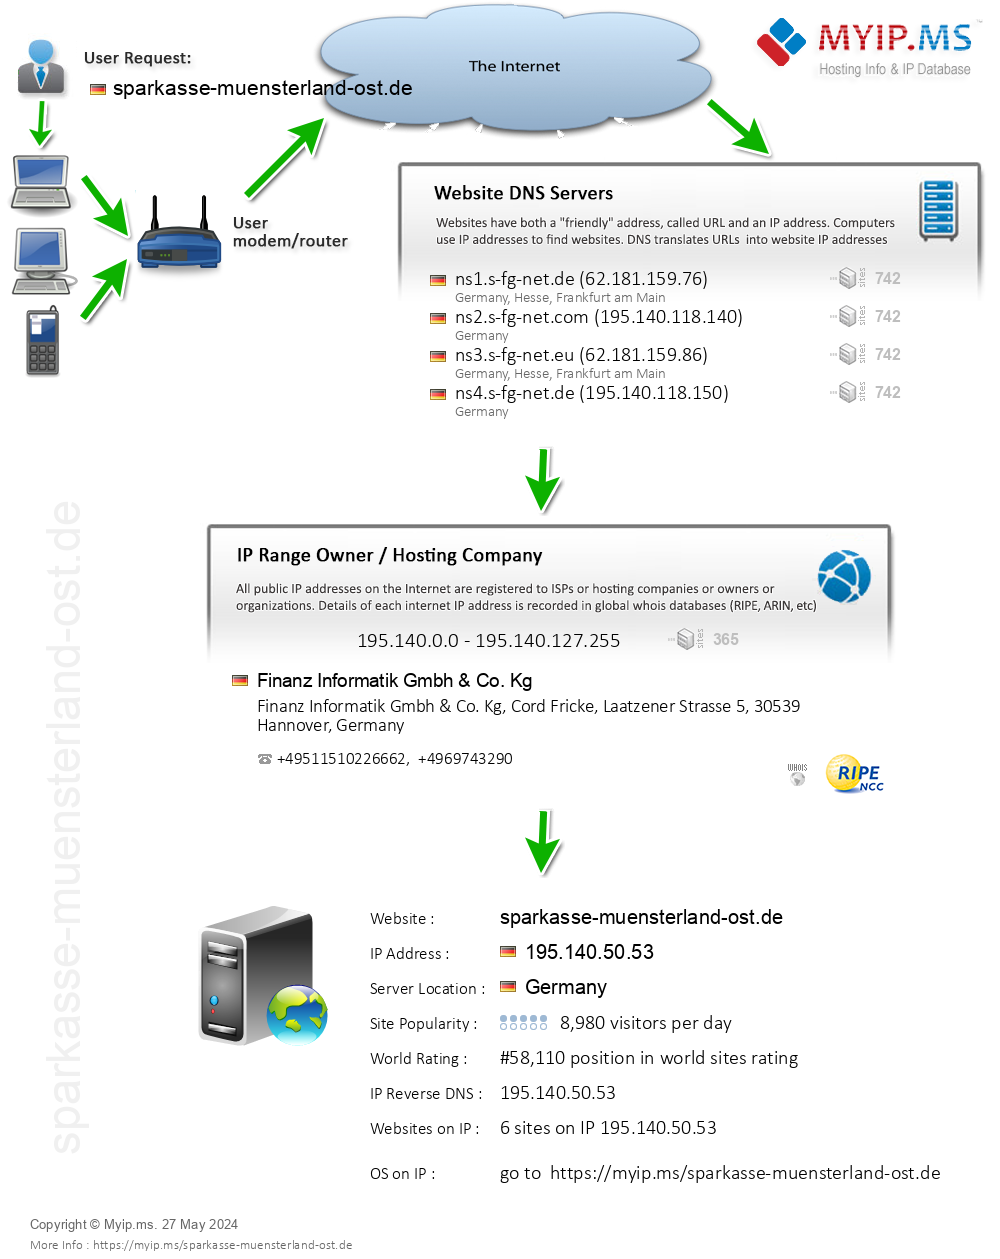 Sparkasse-muensterland-ost.de - Website Hosting Visual IP Diagram